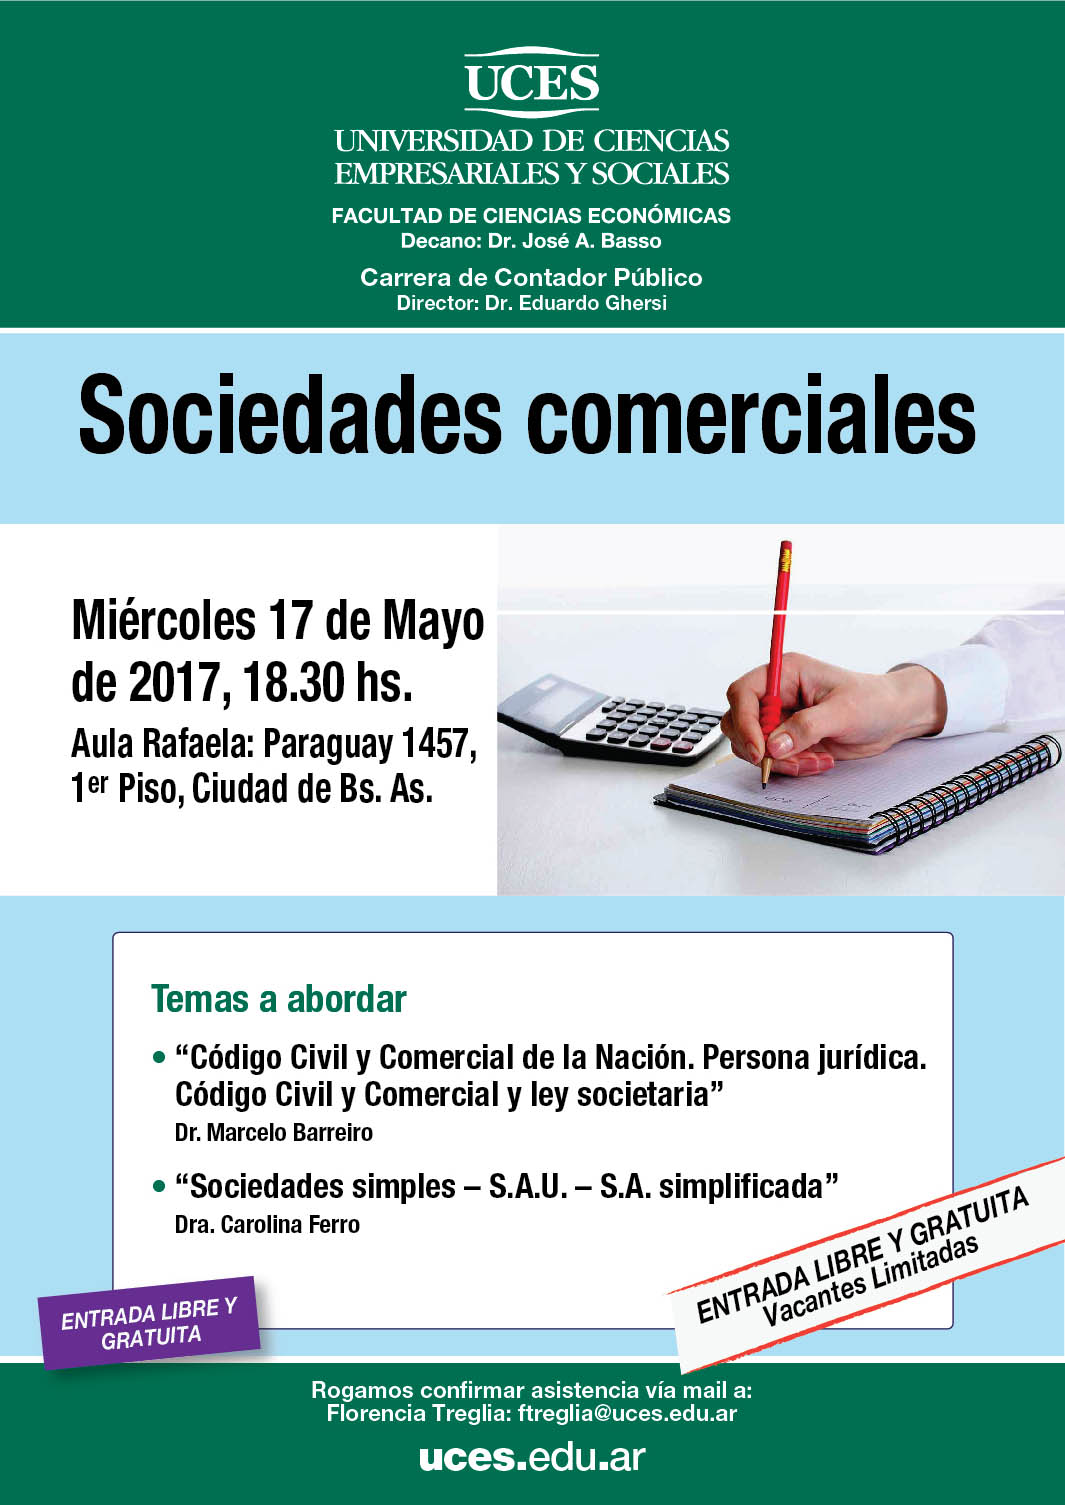  UNIVERSIDAD DE CIENCIAS EMPRESARIALES Y SOCIALES  IECIF